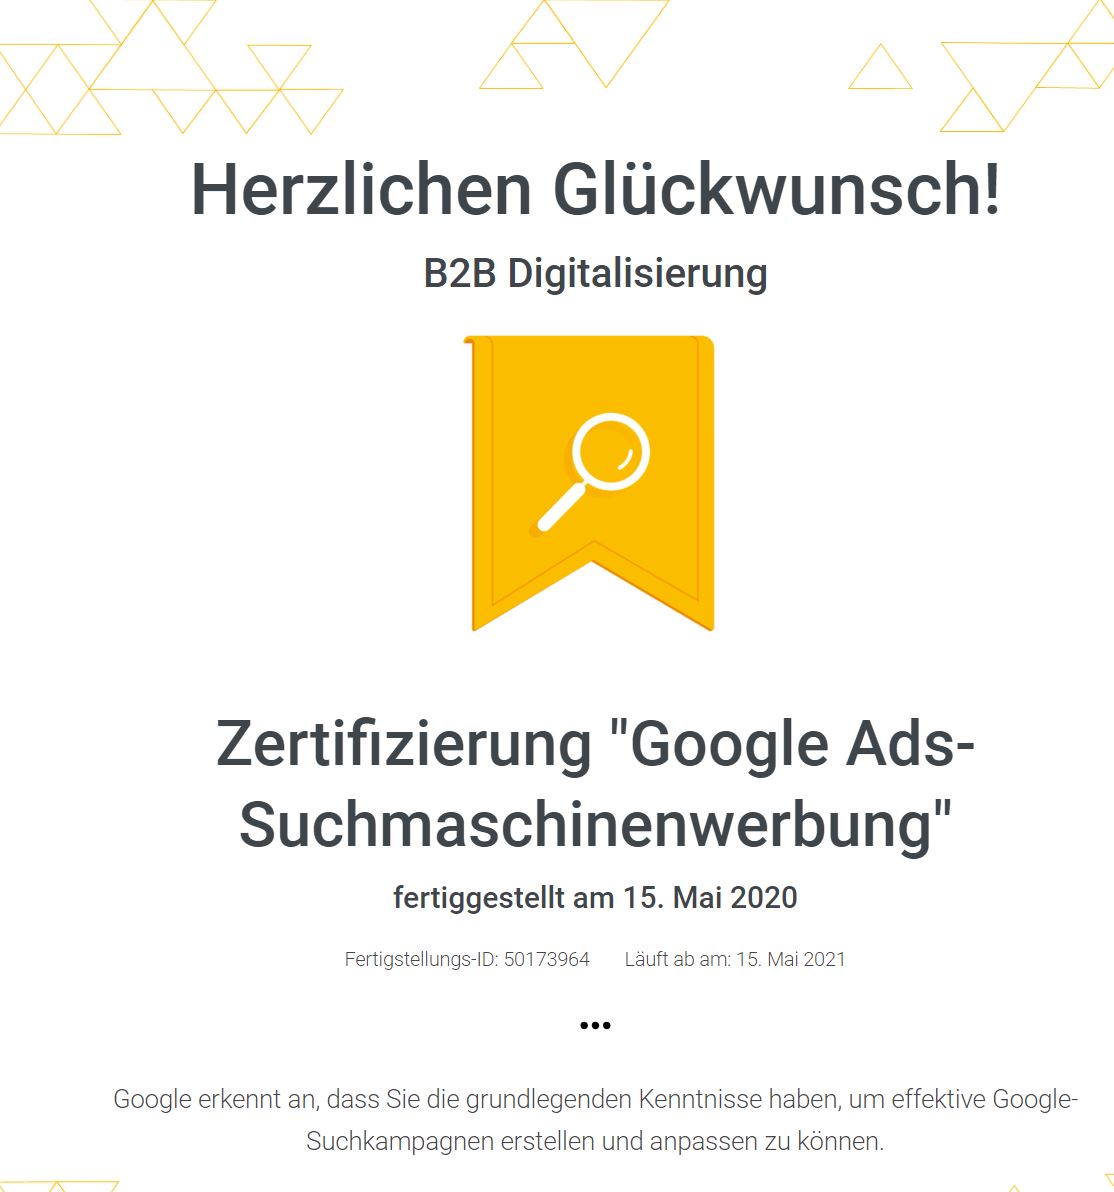 Google Ads B2B Digitalisierung